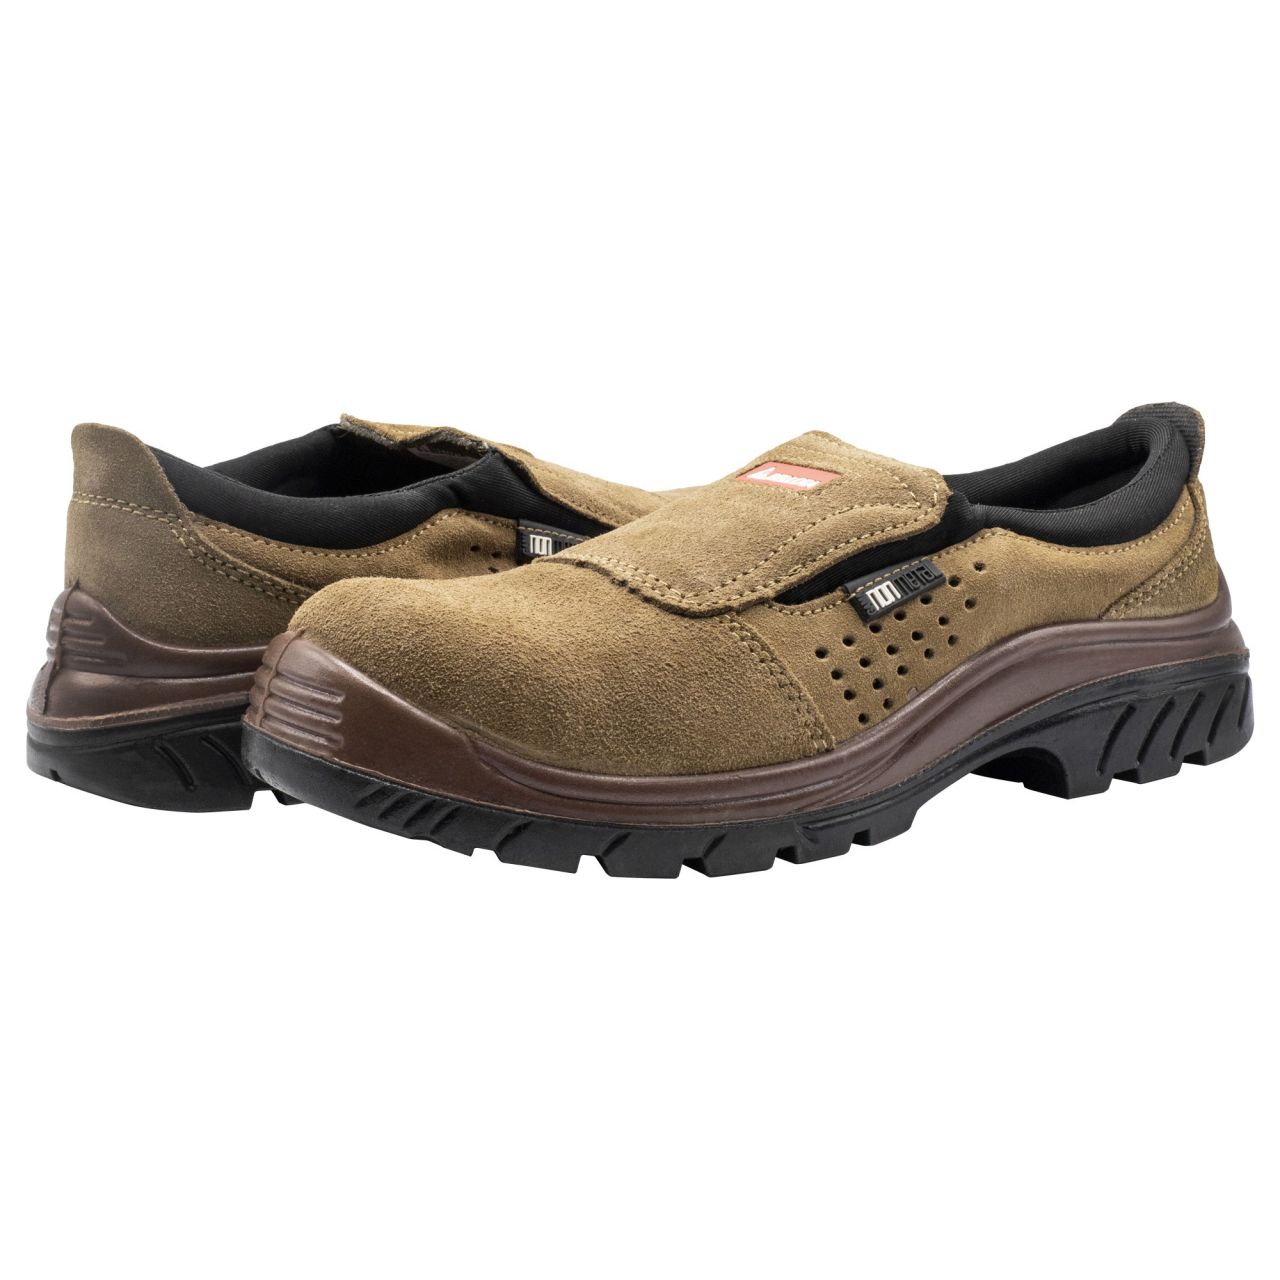 Zapato de seguridad Nonmetal Easy serraje marrón S1P talla 38 / 7222738S1P